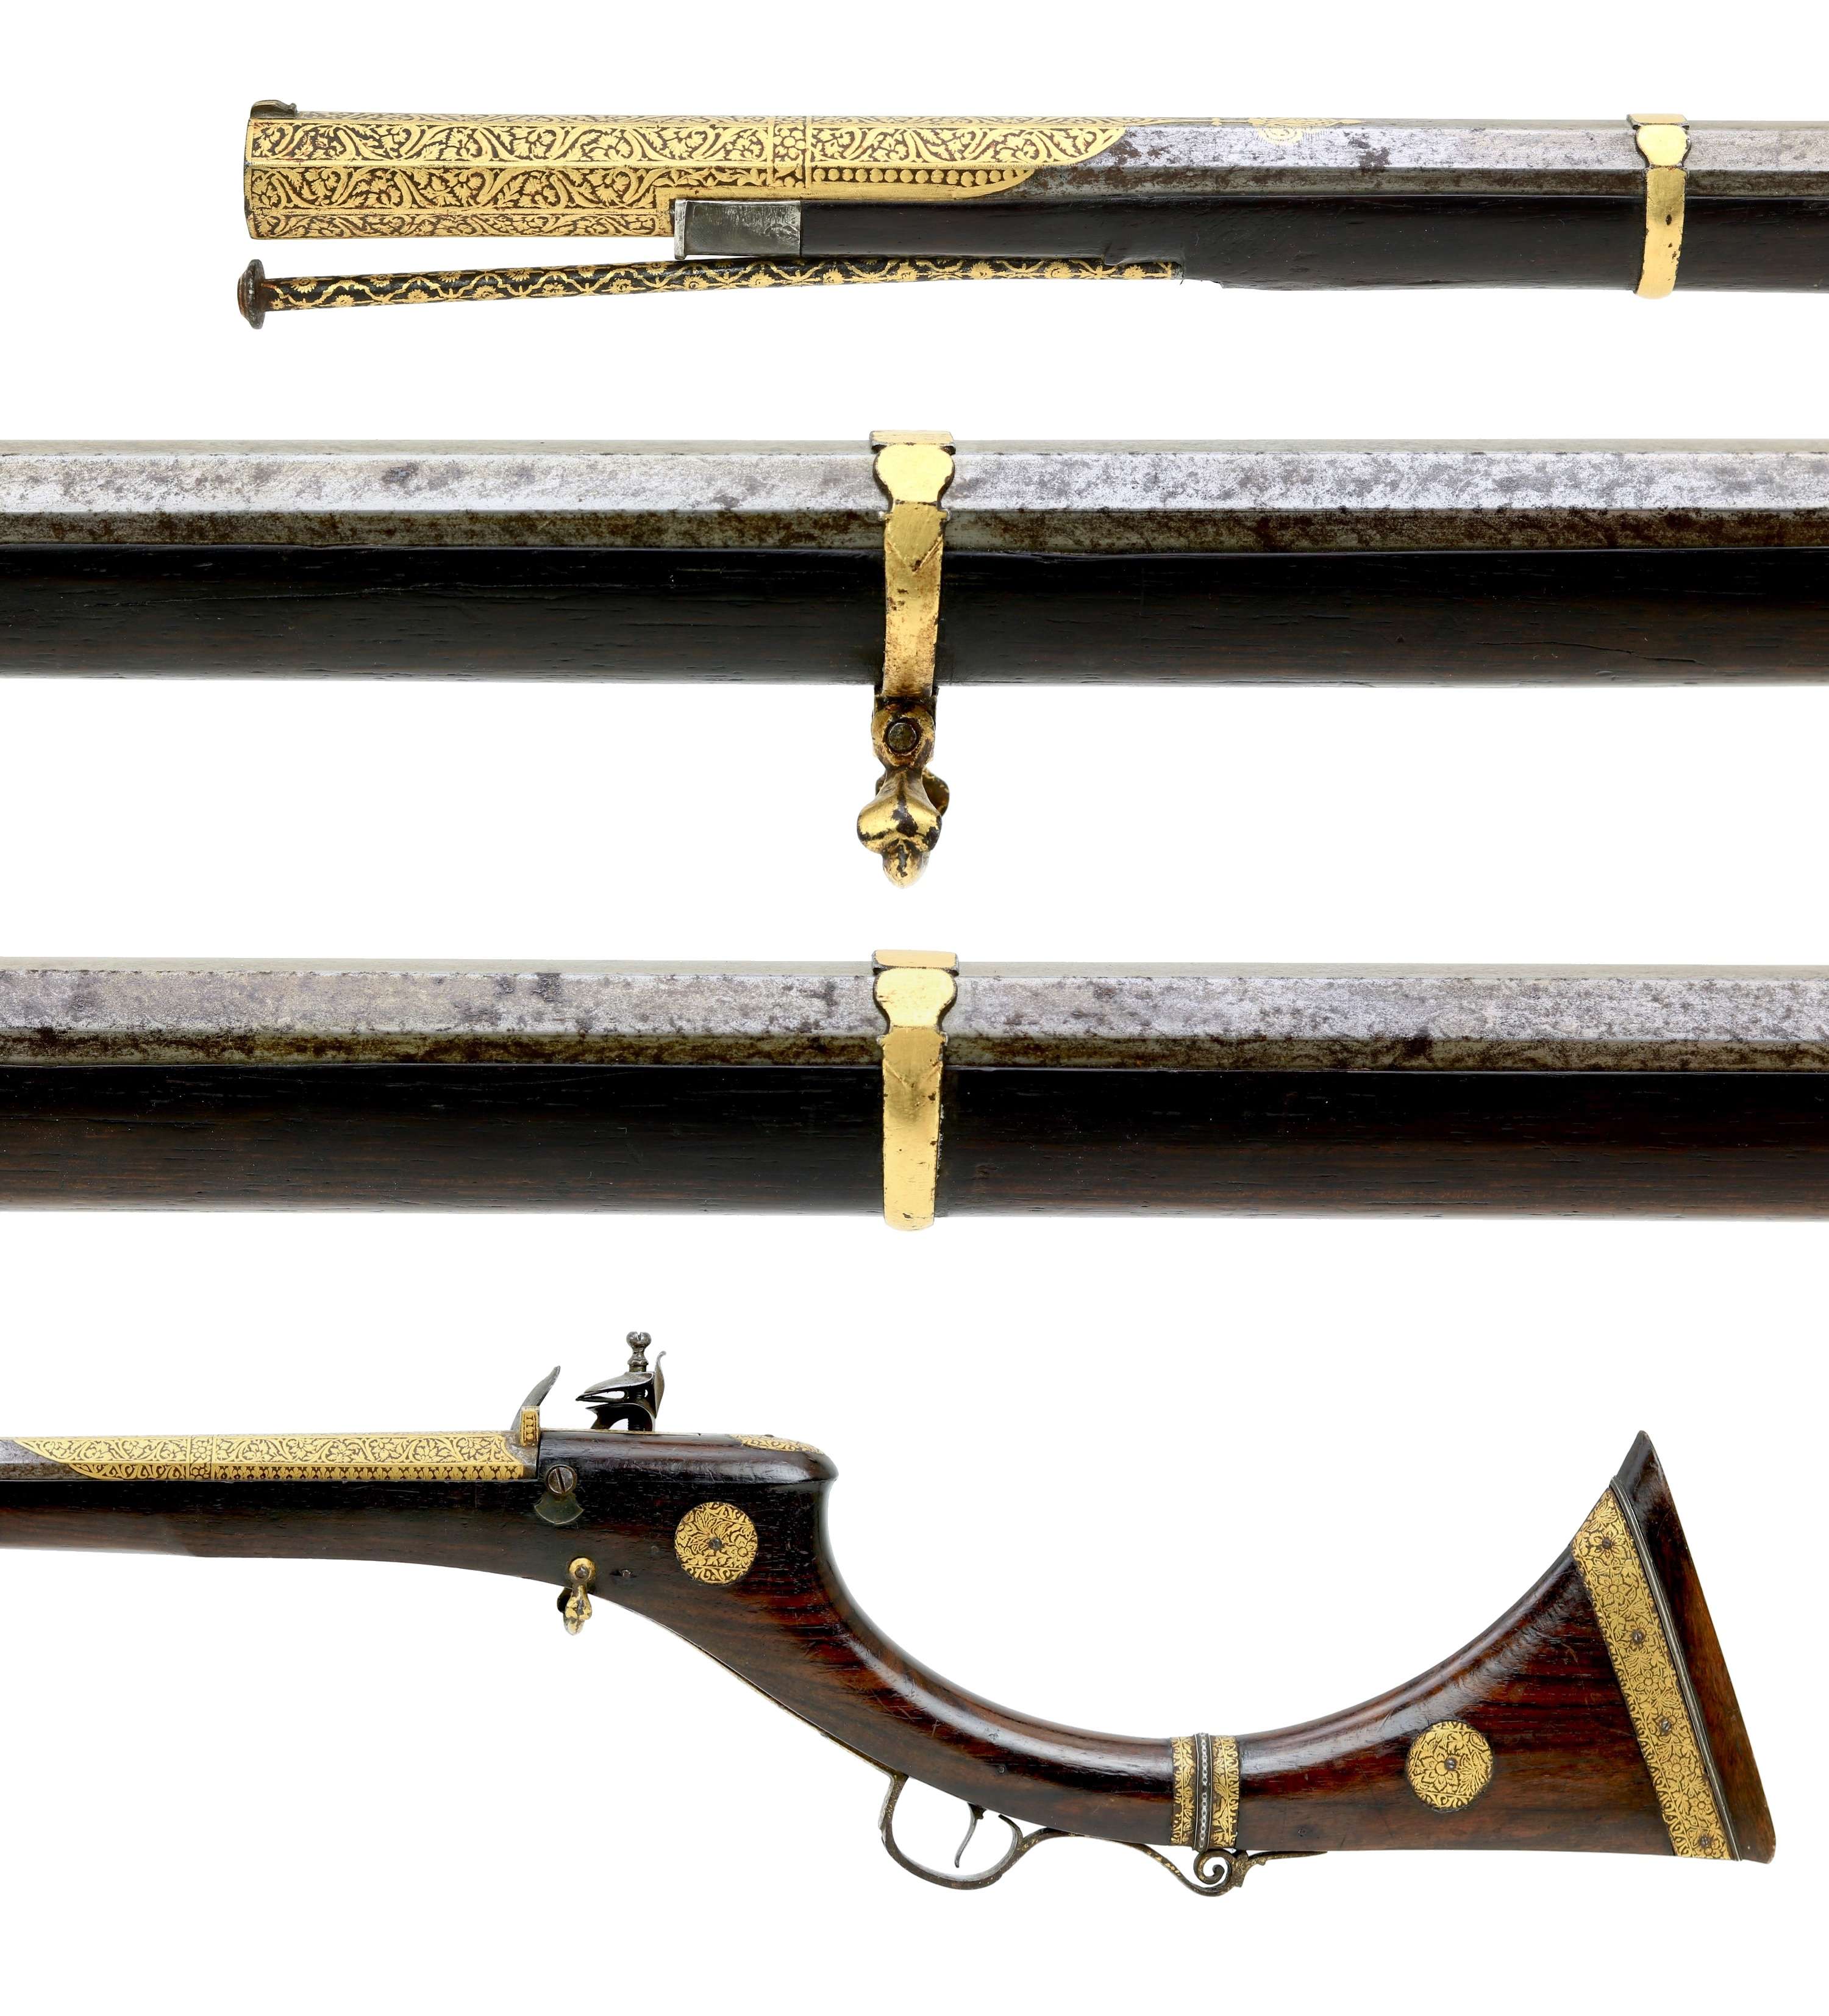 Fine flintlock musket from Sindh